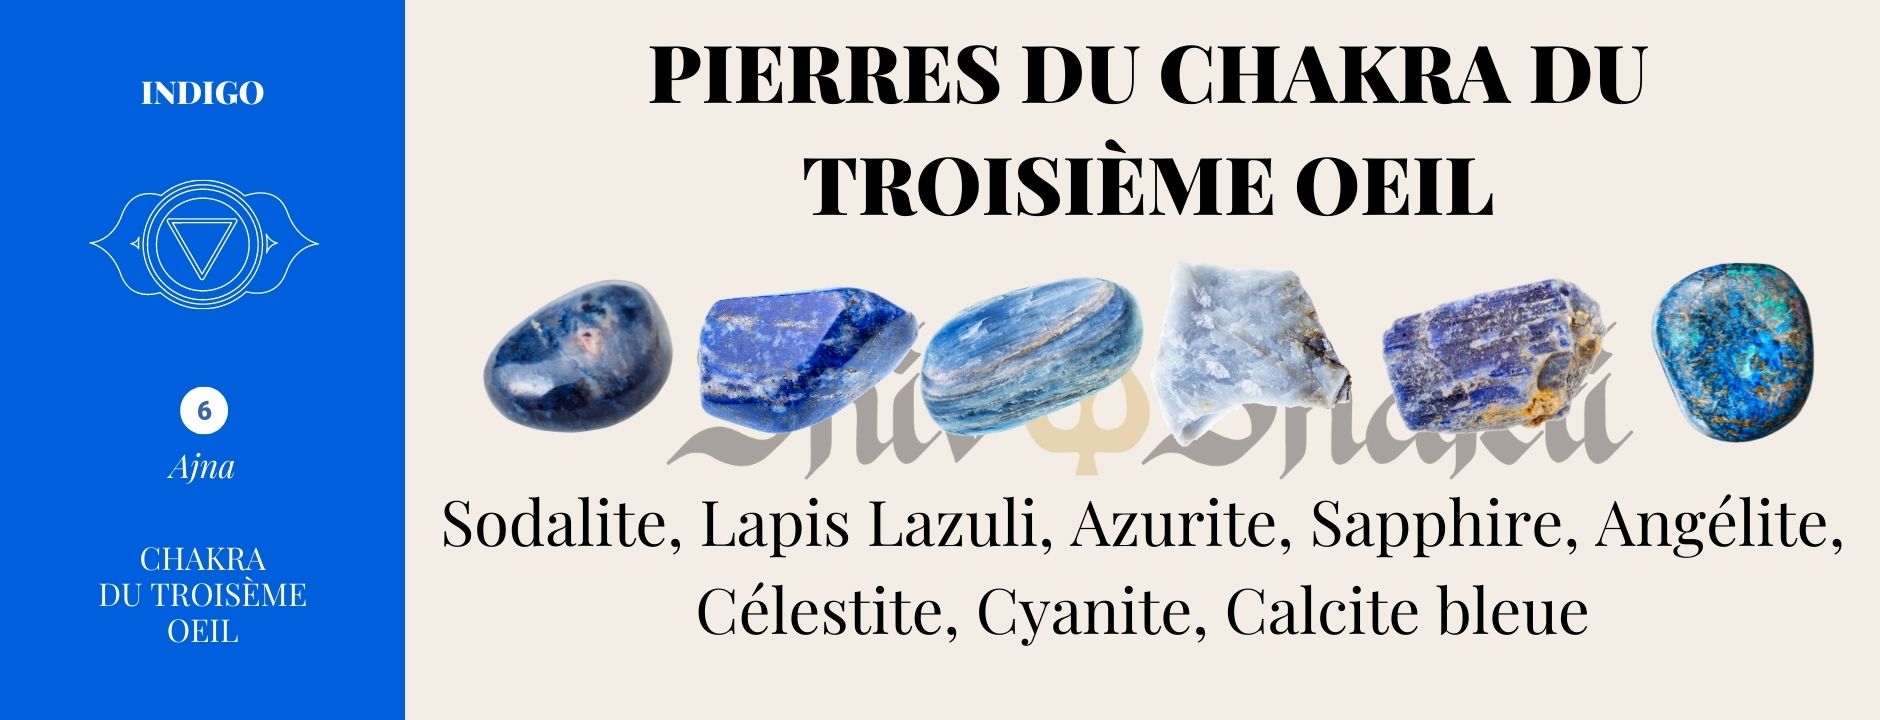  Pierres et cristaux du chakra du troisième œil